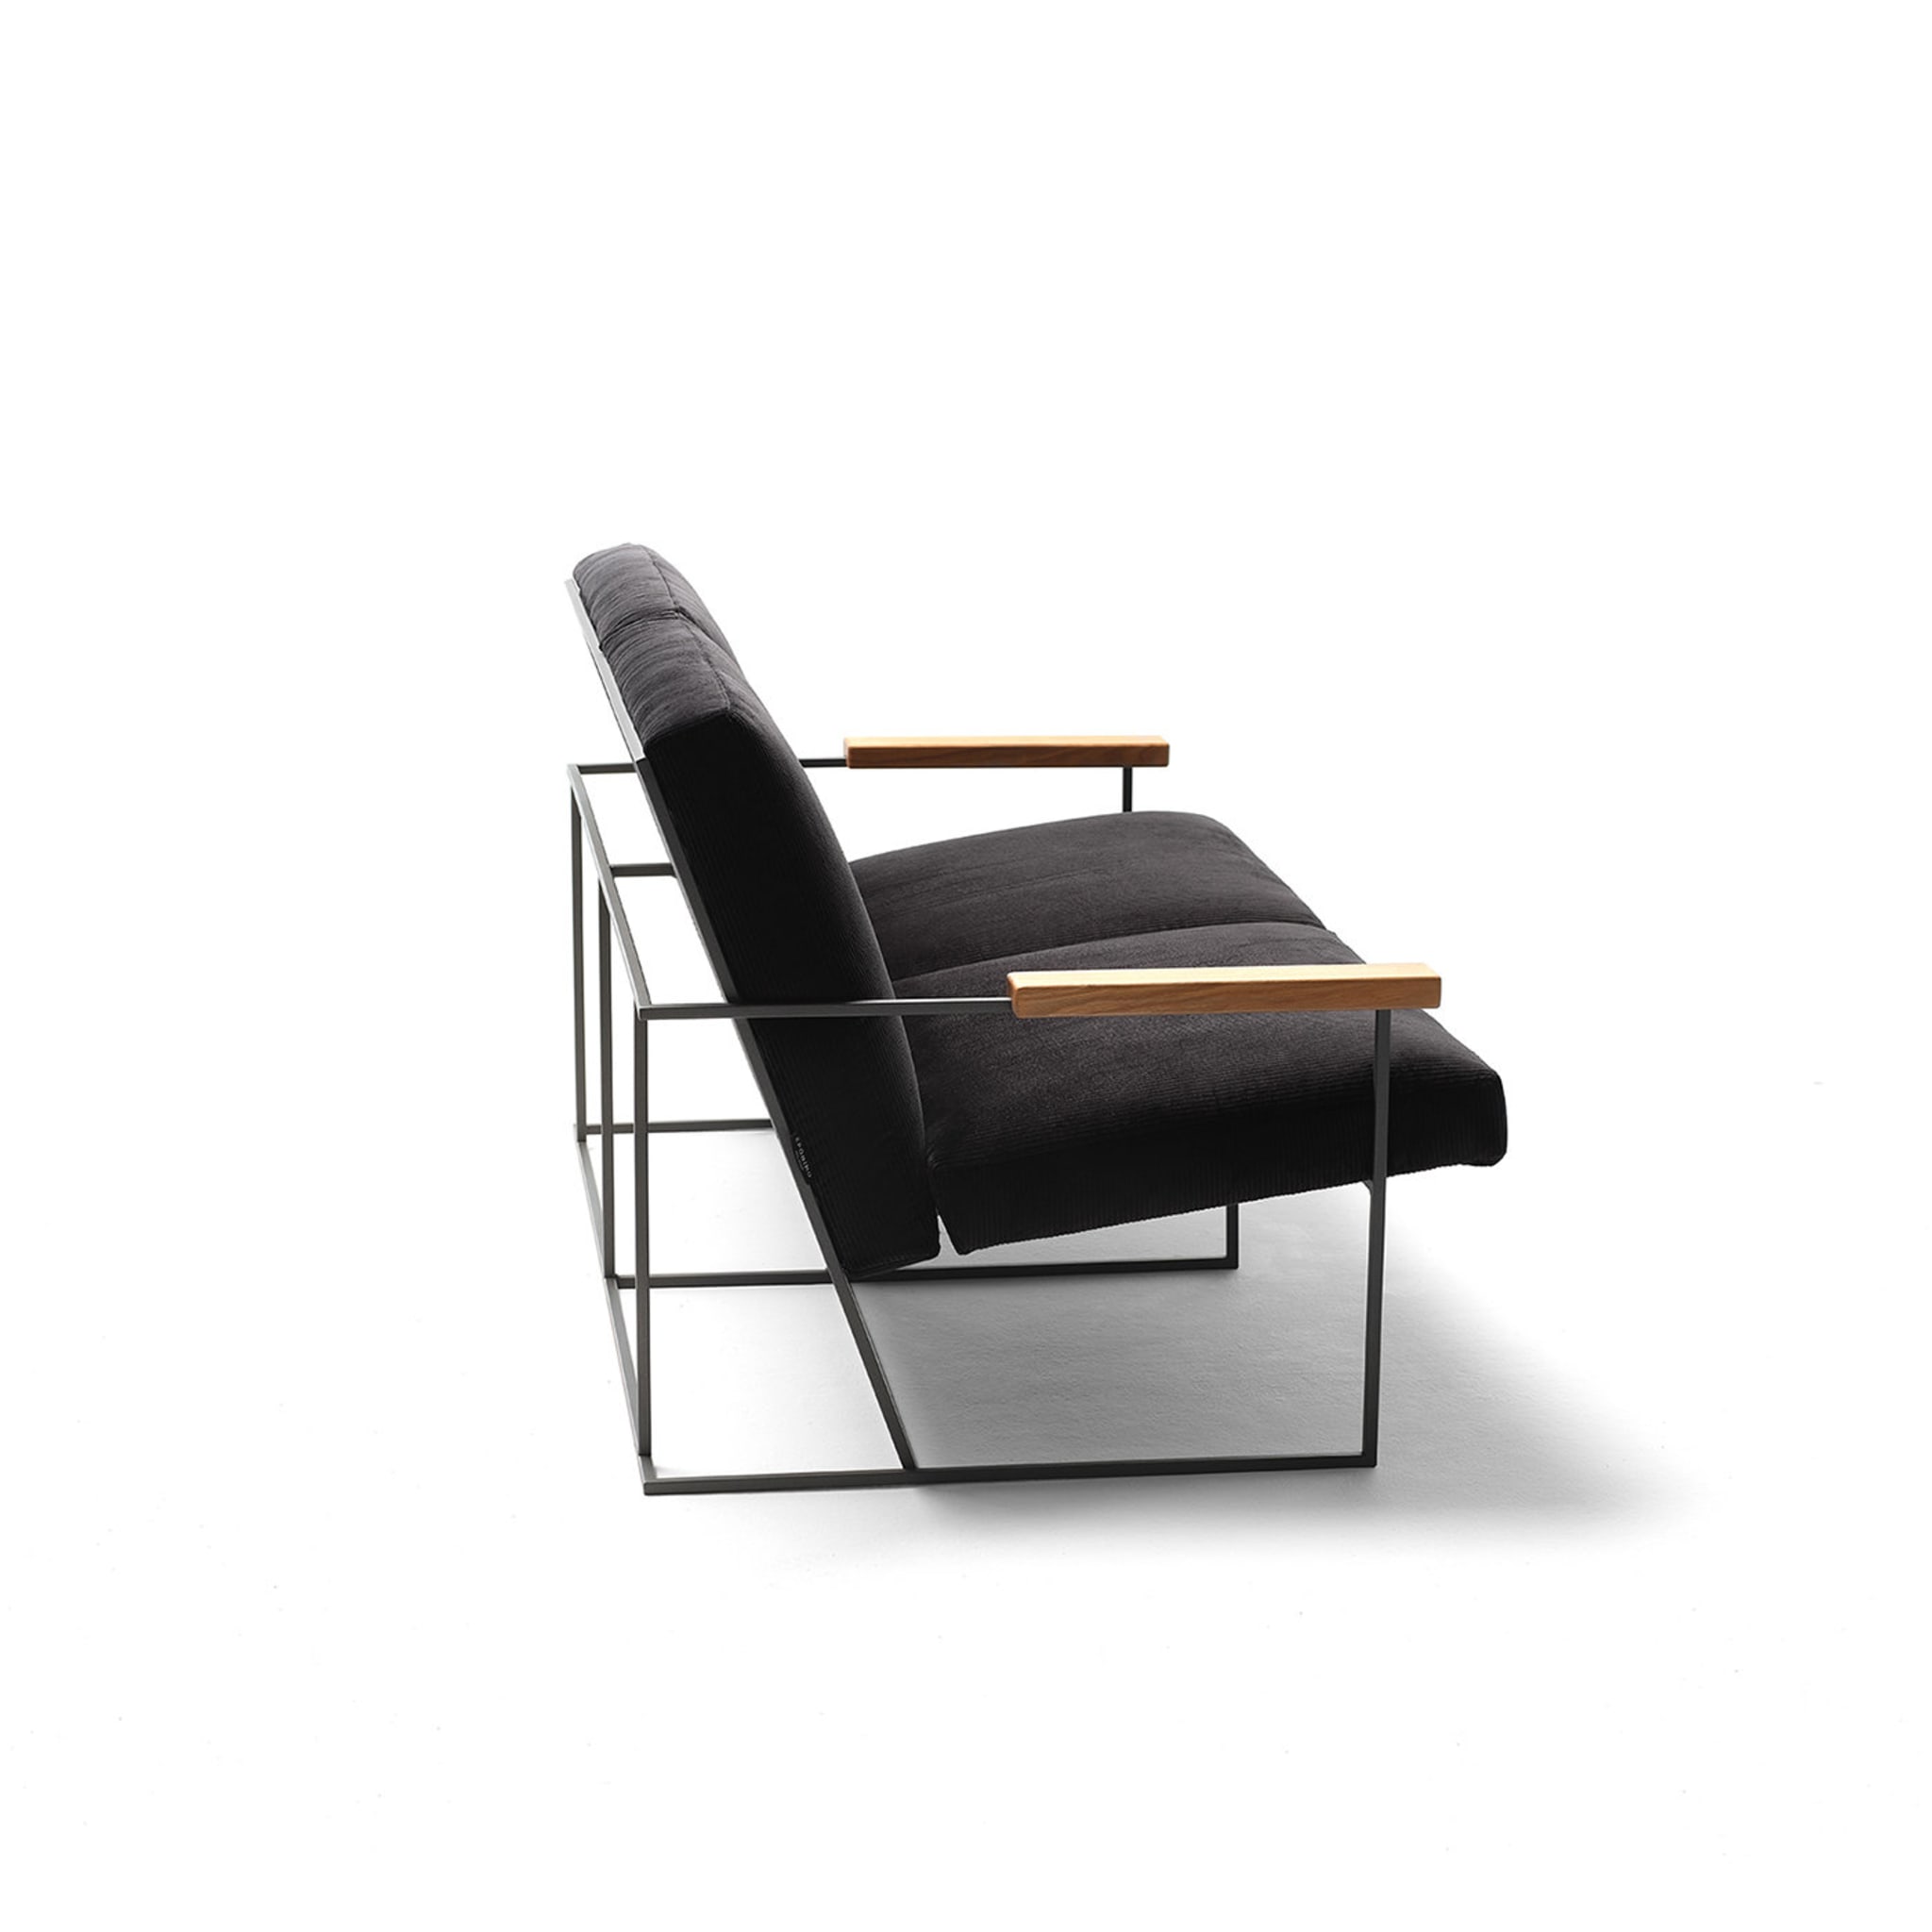 Gotham Schwarzes 2-sitzer sofa von Federico Carandini - Alternative Ansicht 3